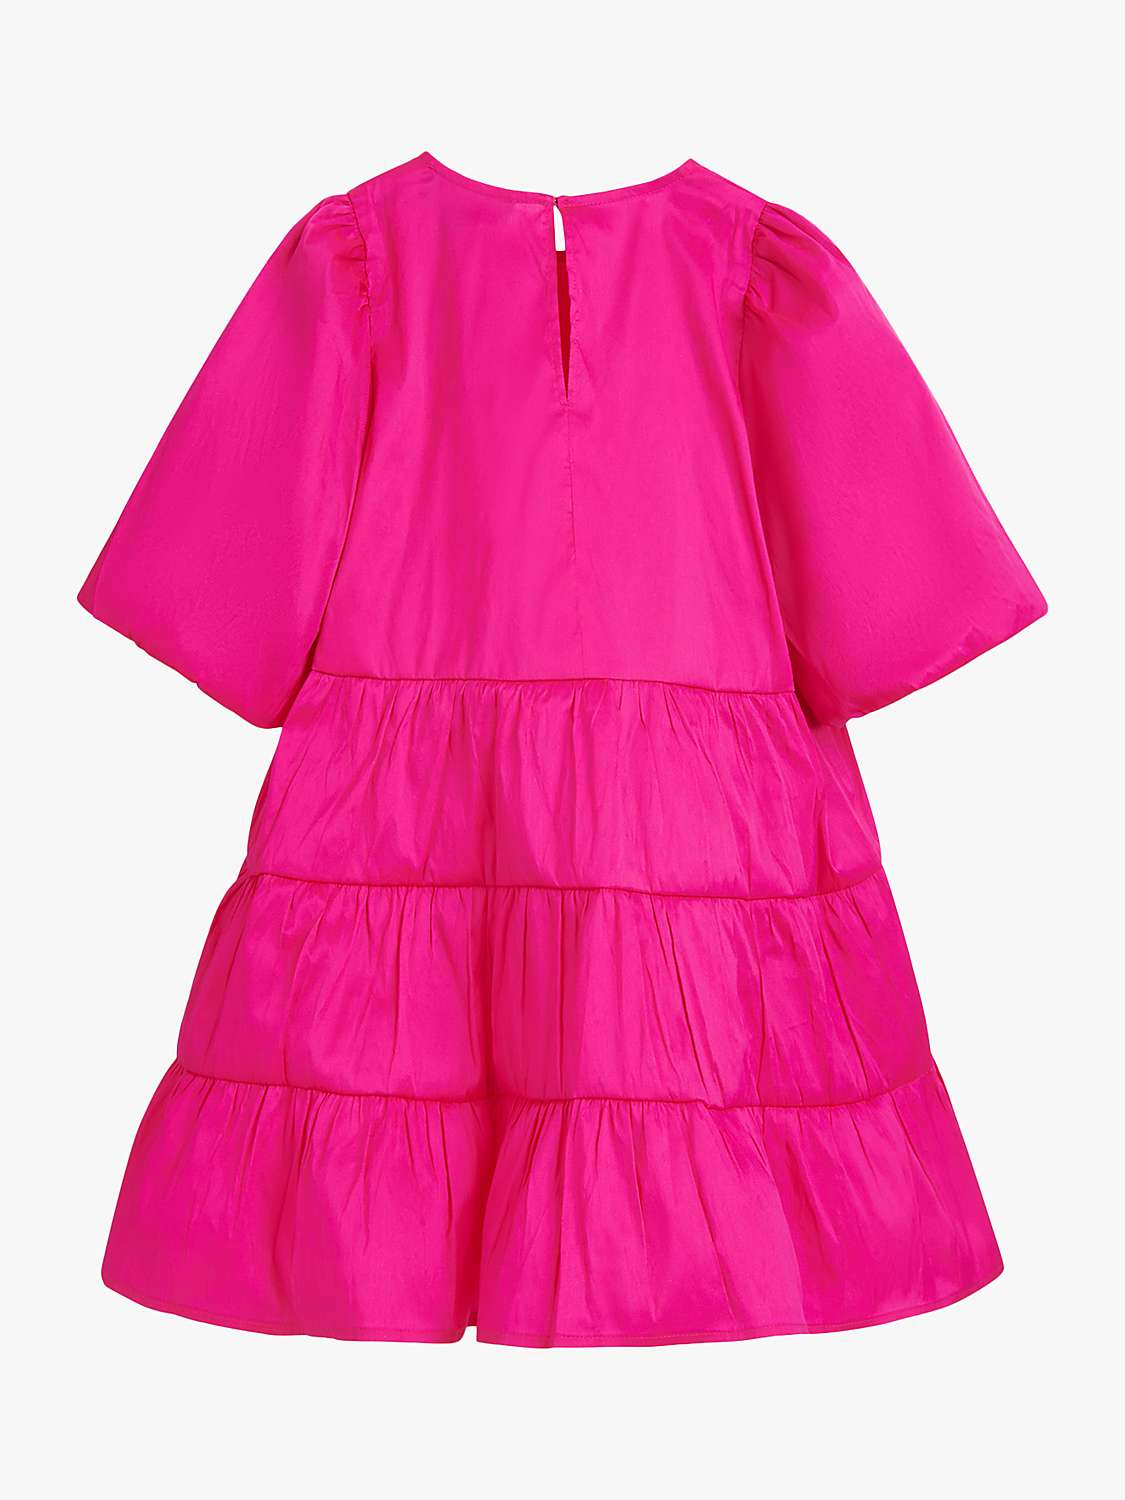 Whistles Kids' Bella Puff Sleeve Tiered Dress, Pink at John Lewis ...